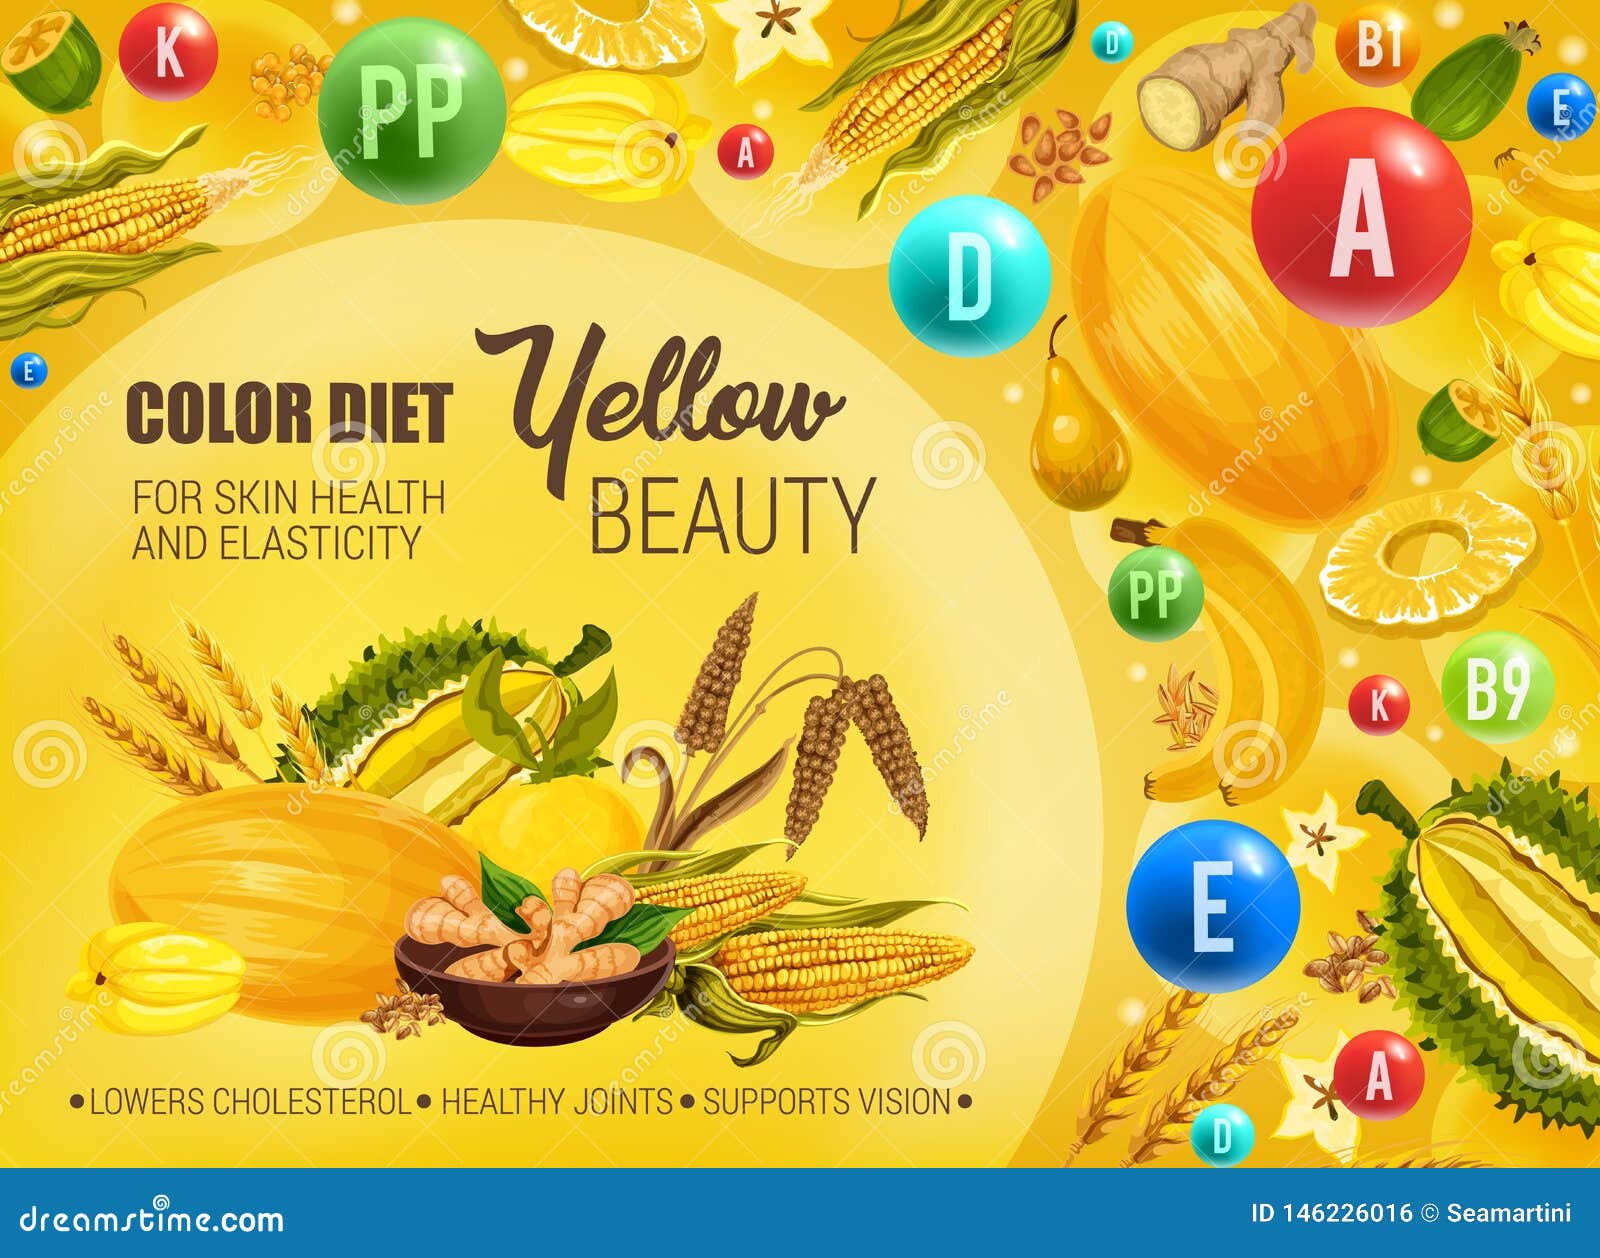 dieta yellow